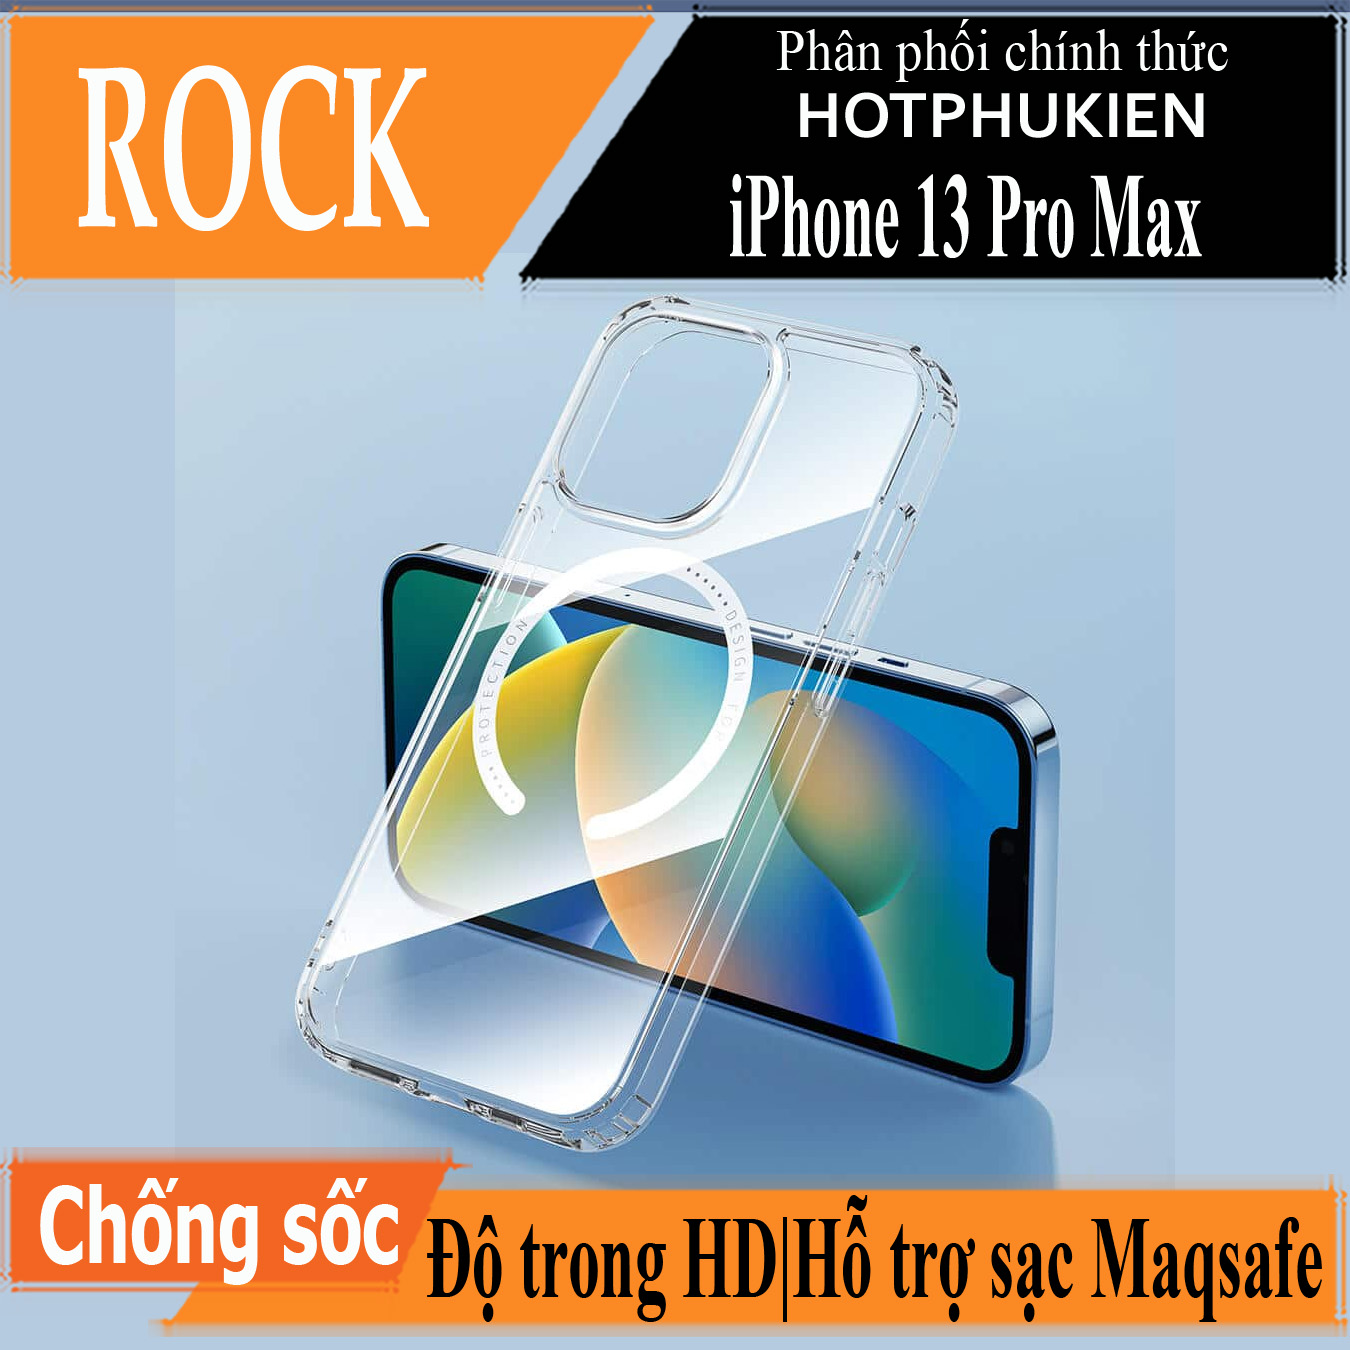 Ốp lưng chống sốc trong suốt hỗ trợ sạc Maqsafe cho iPhone 13 Pro Max (6.7 inch) hiệu Rock Protection Maqsafe Magetic Case (siêu mỏng 1.5mm, độ trong tuyệt đối, chống trầy xước, chống ố vàng, tản nhiệt tốt) - hàng nhập khẩu